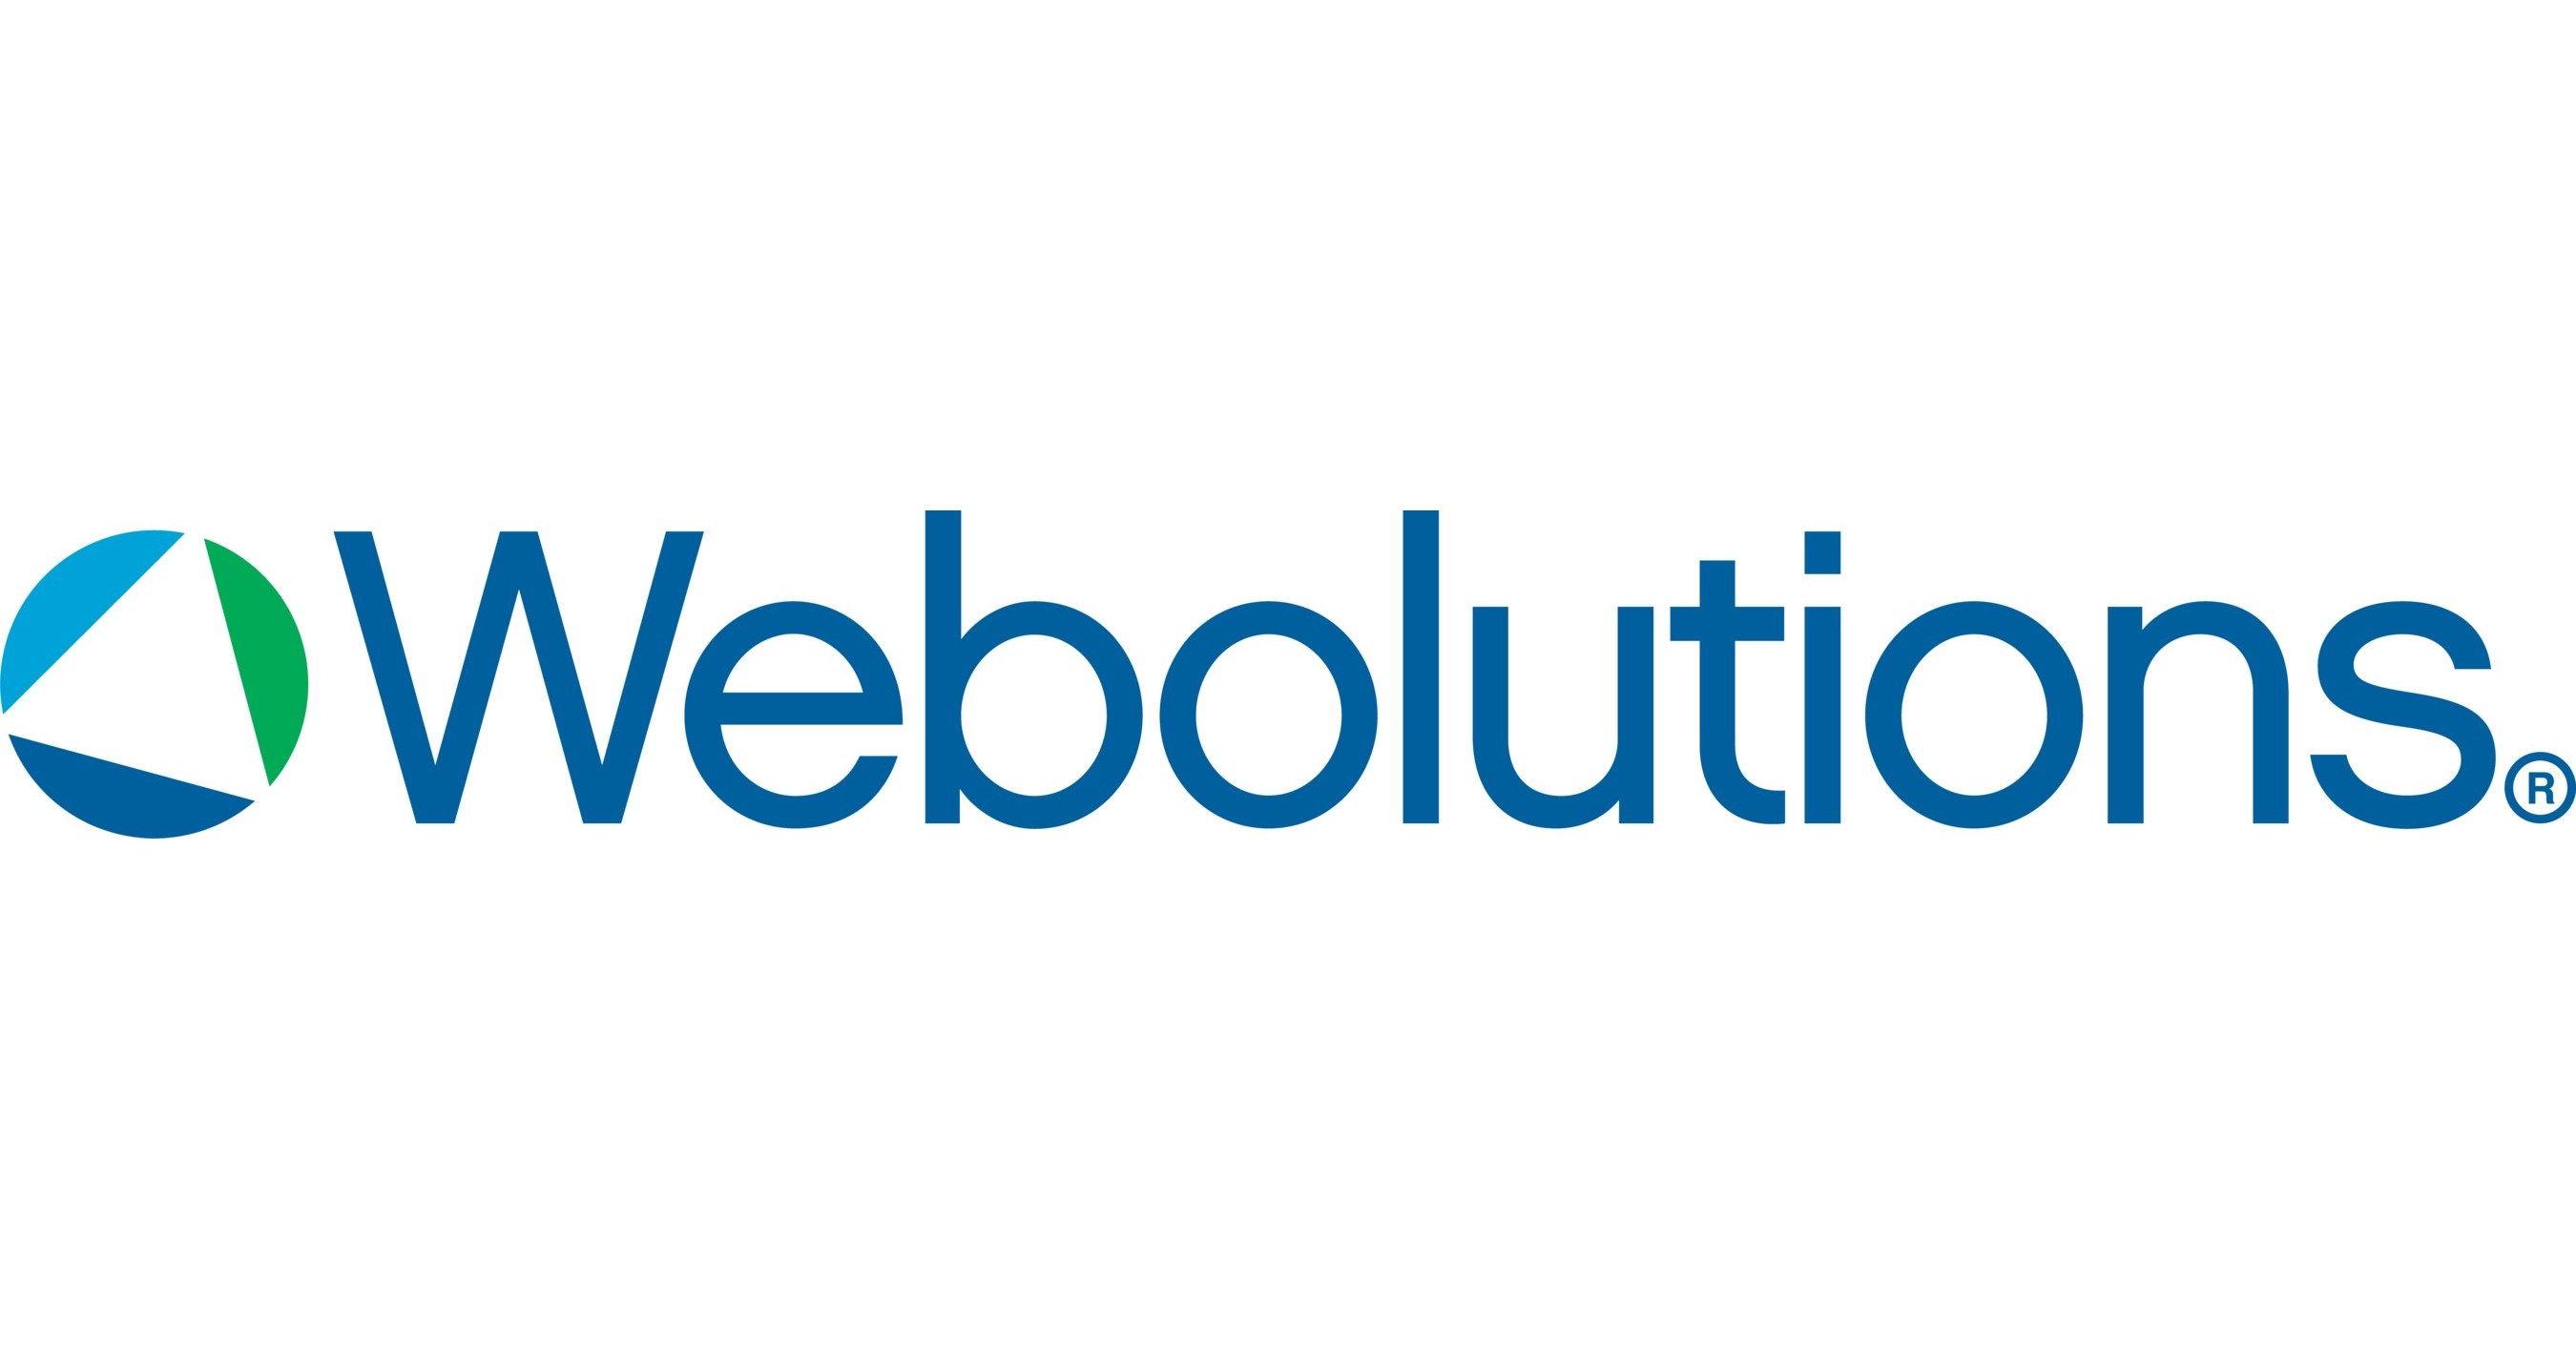 Webolutions